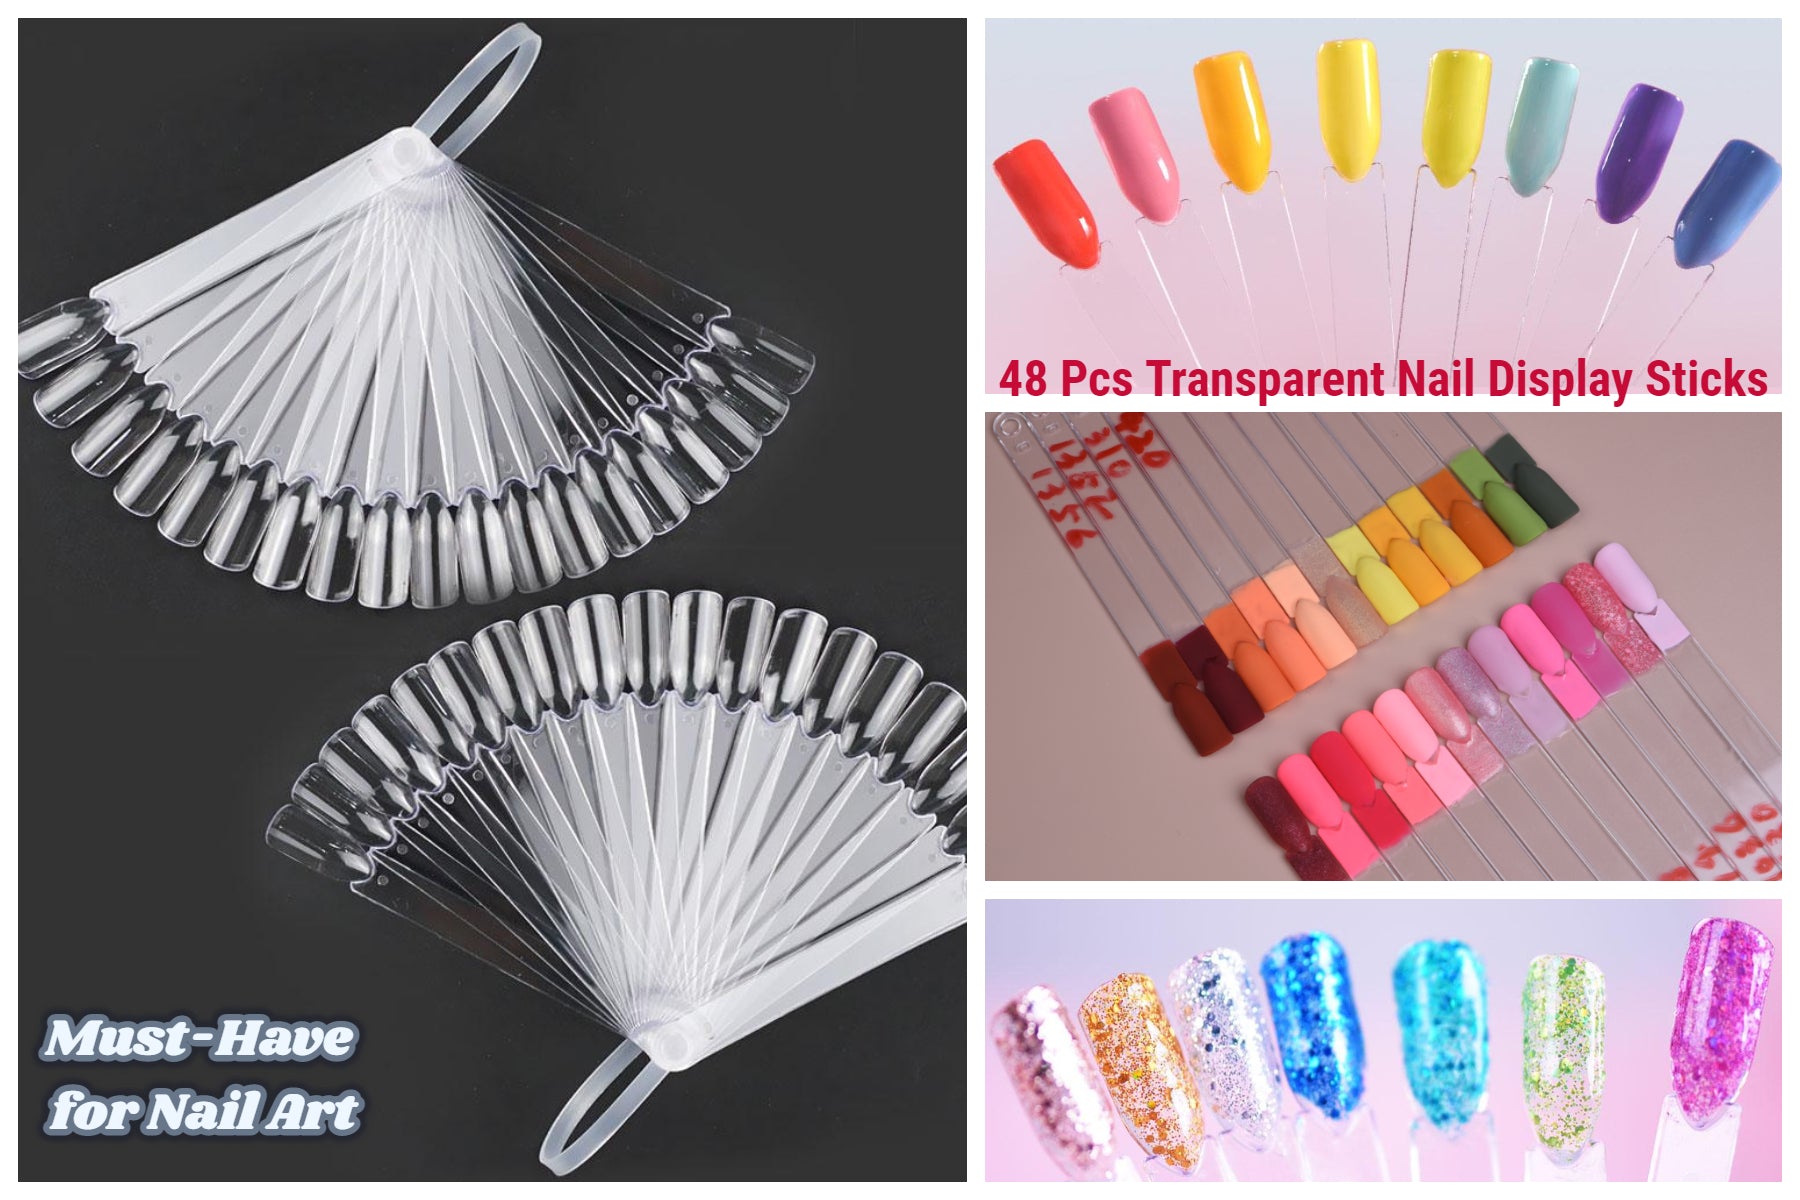 48 Pcs Transparent Nail Display Sticks